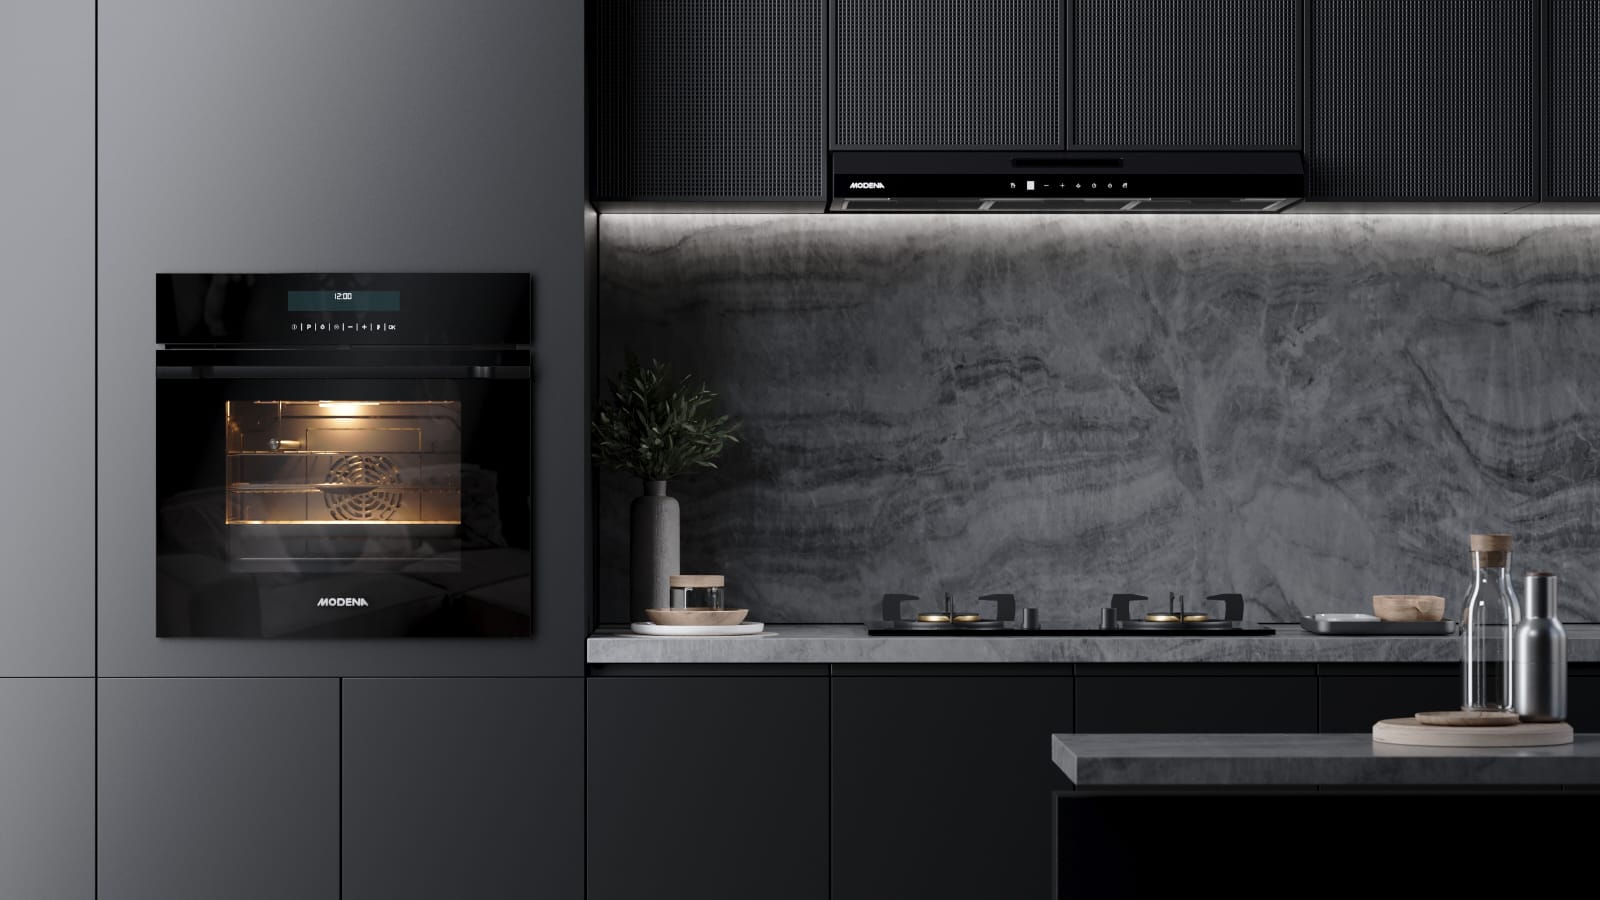 MODENA Perkenalkan Built-in Oven dan Air Fryer 2 in 1, Kombinasi Ideal untuk Dapur Modern